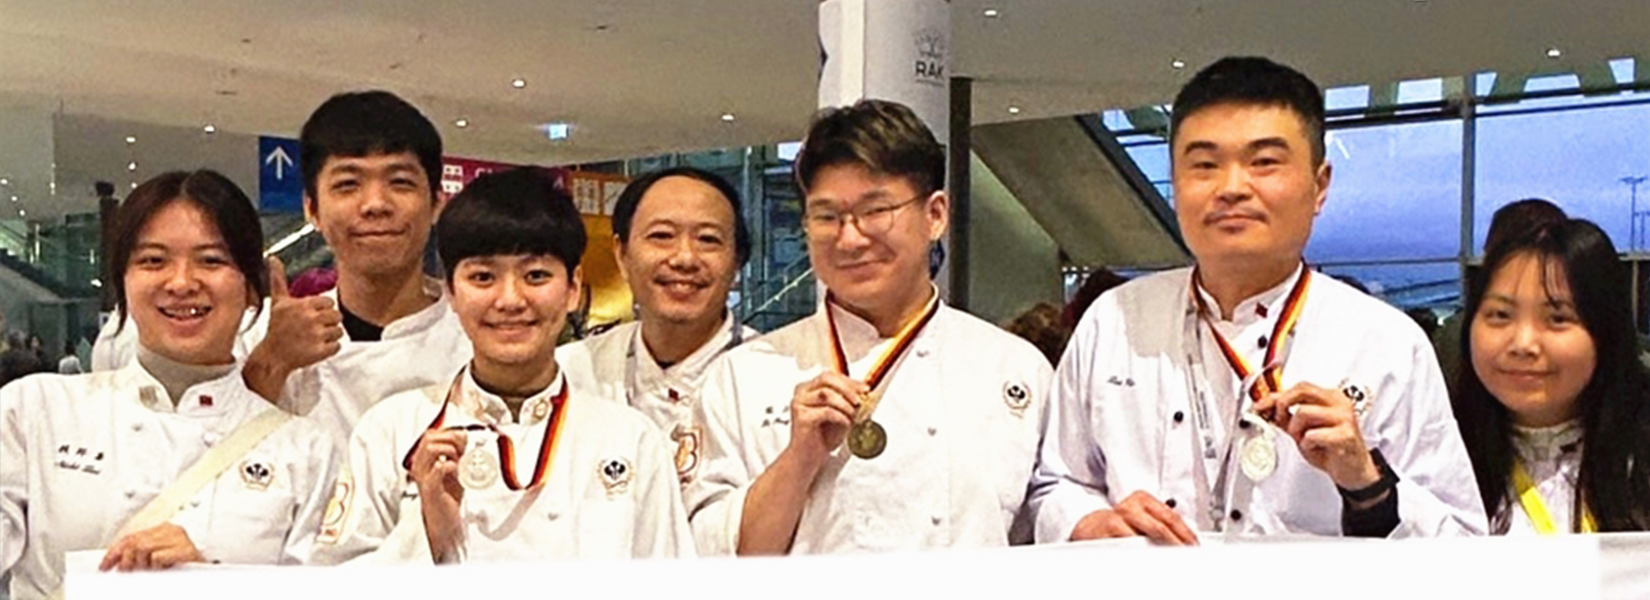 狂賀!!高餐大烘焙系賴毓宏及王先正老師領軍師生 德國IKA廚藝競賽榮獲兩銀兩銅